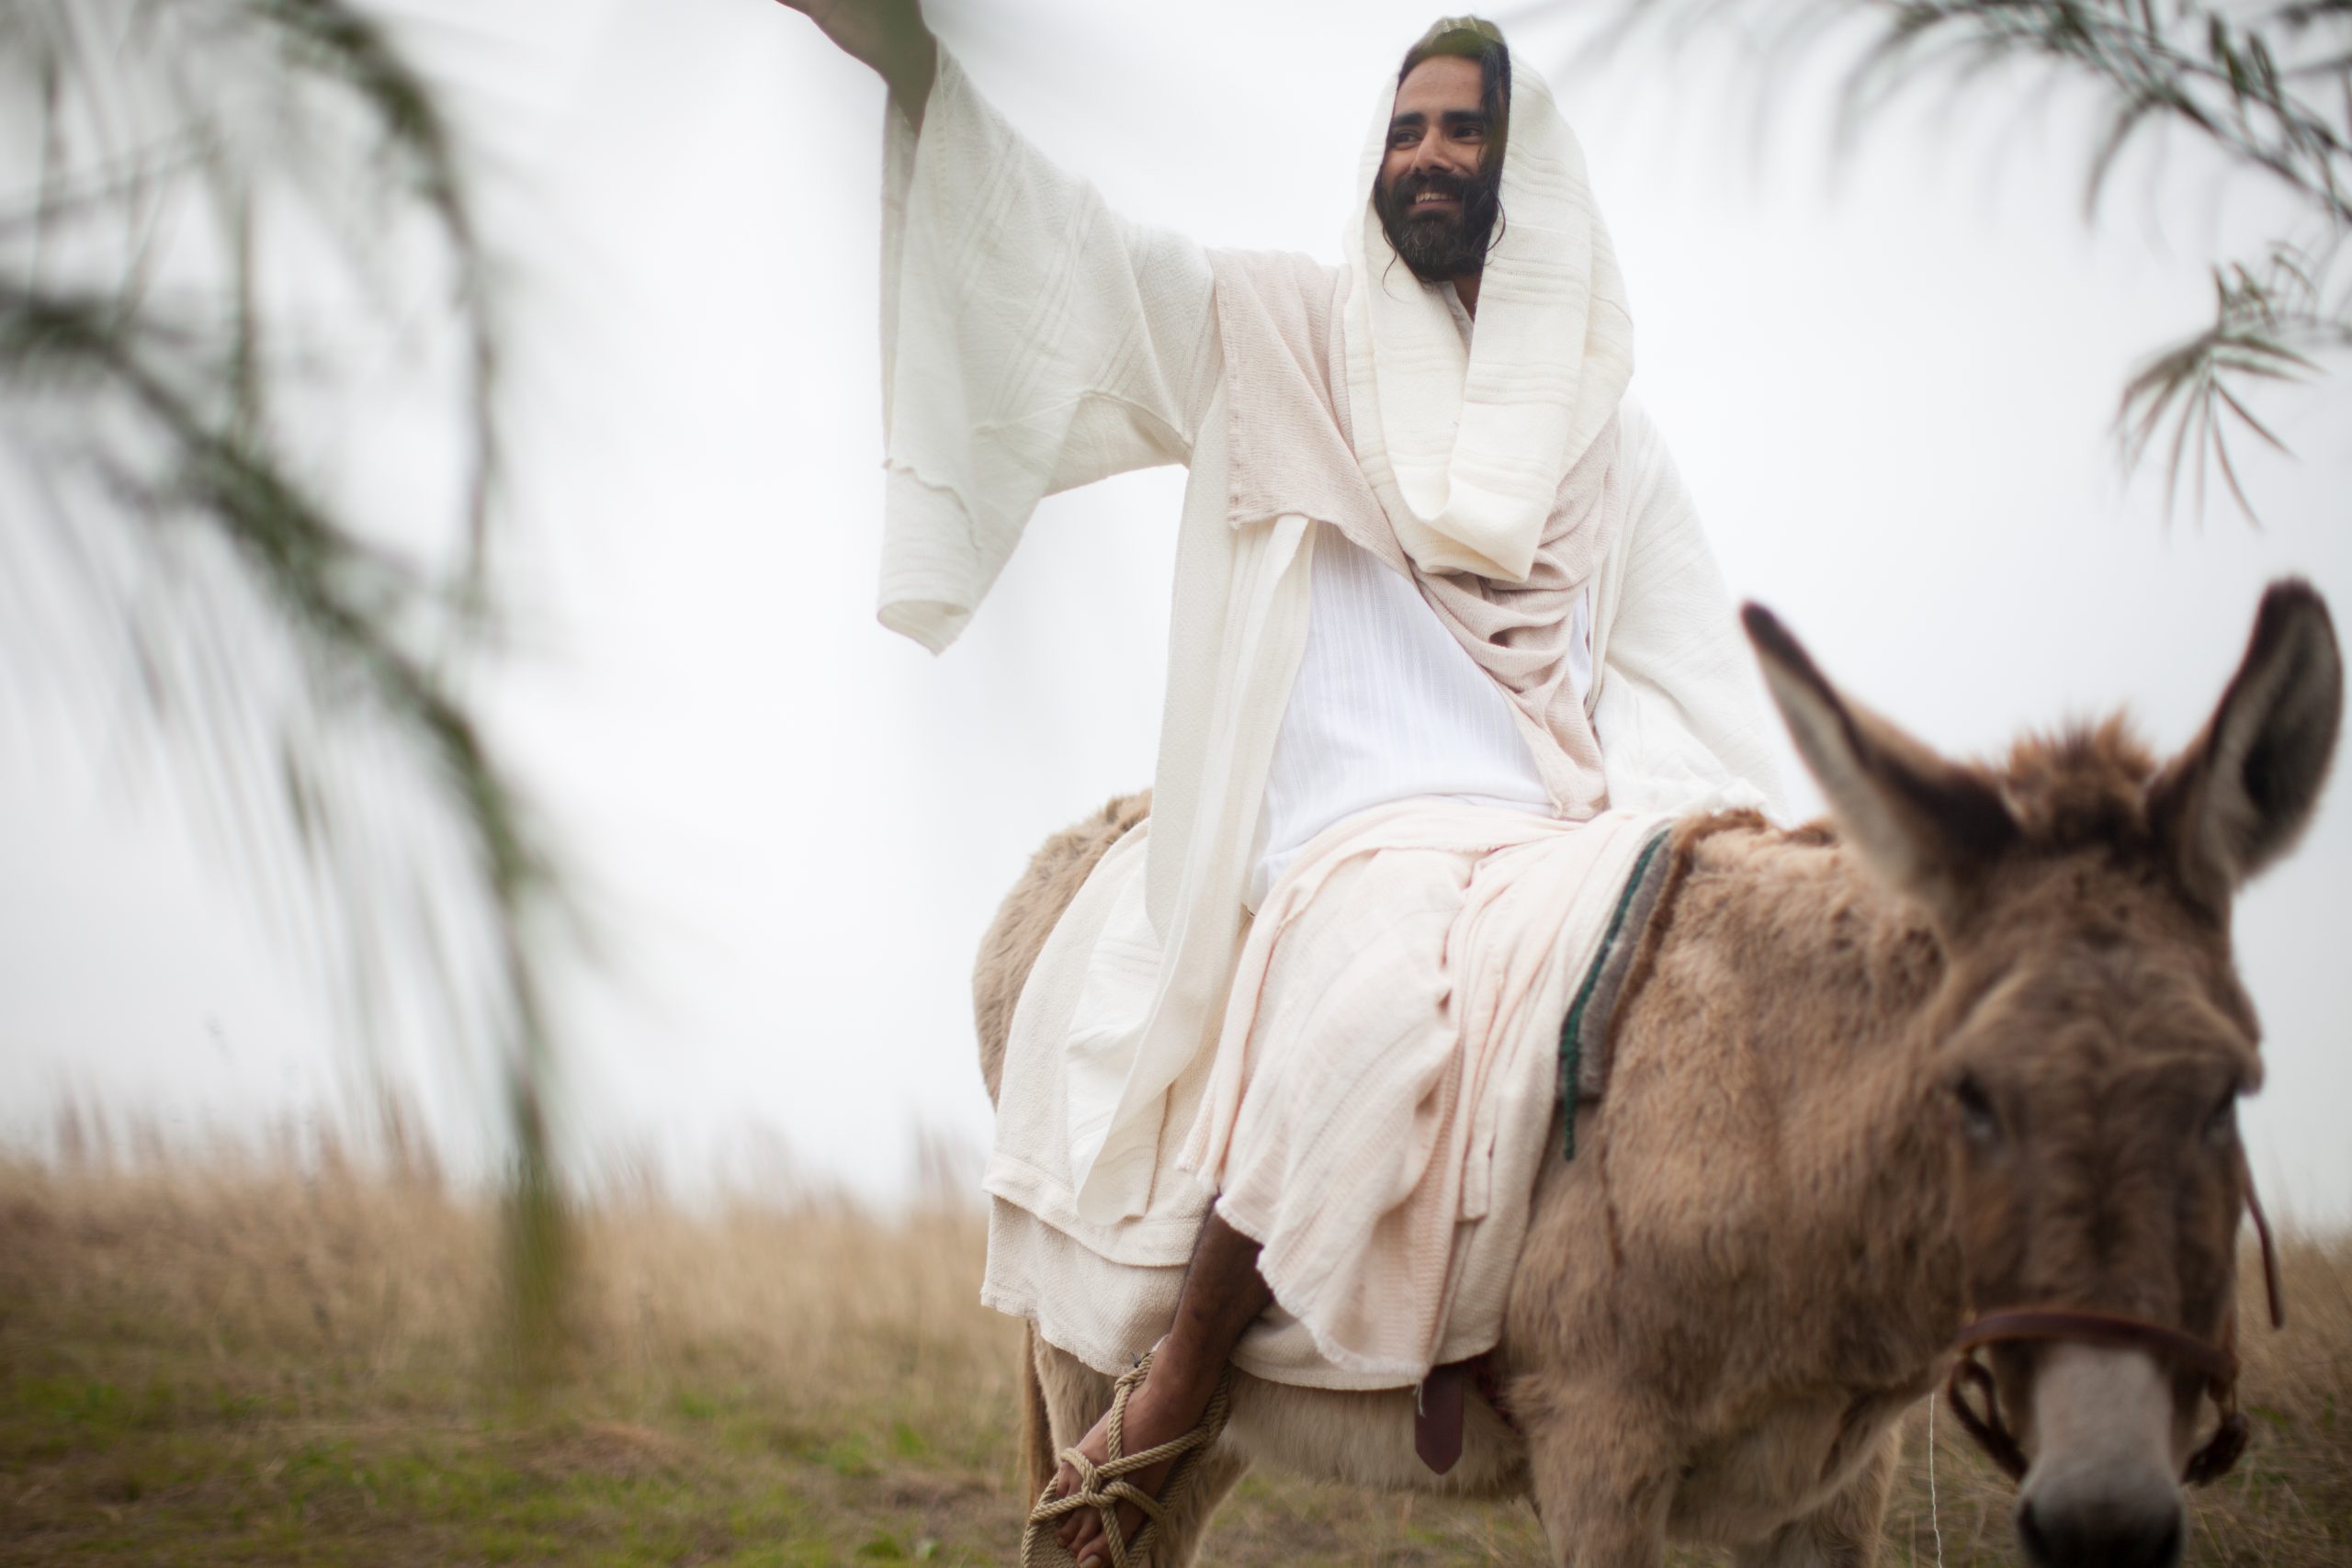 Da Jesus red inn i Jerusalem på eselet, satt han ikke på sin høye hest